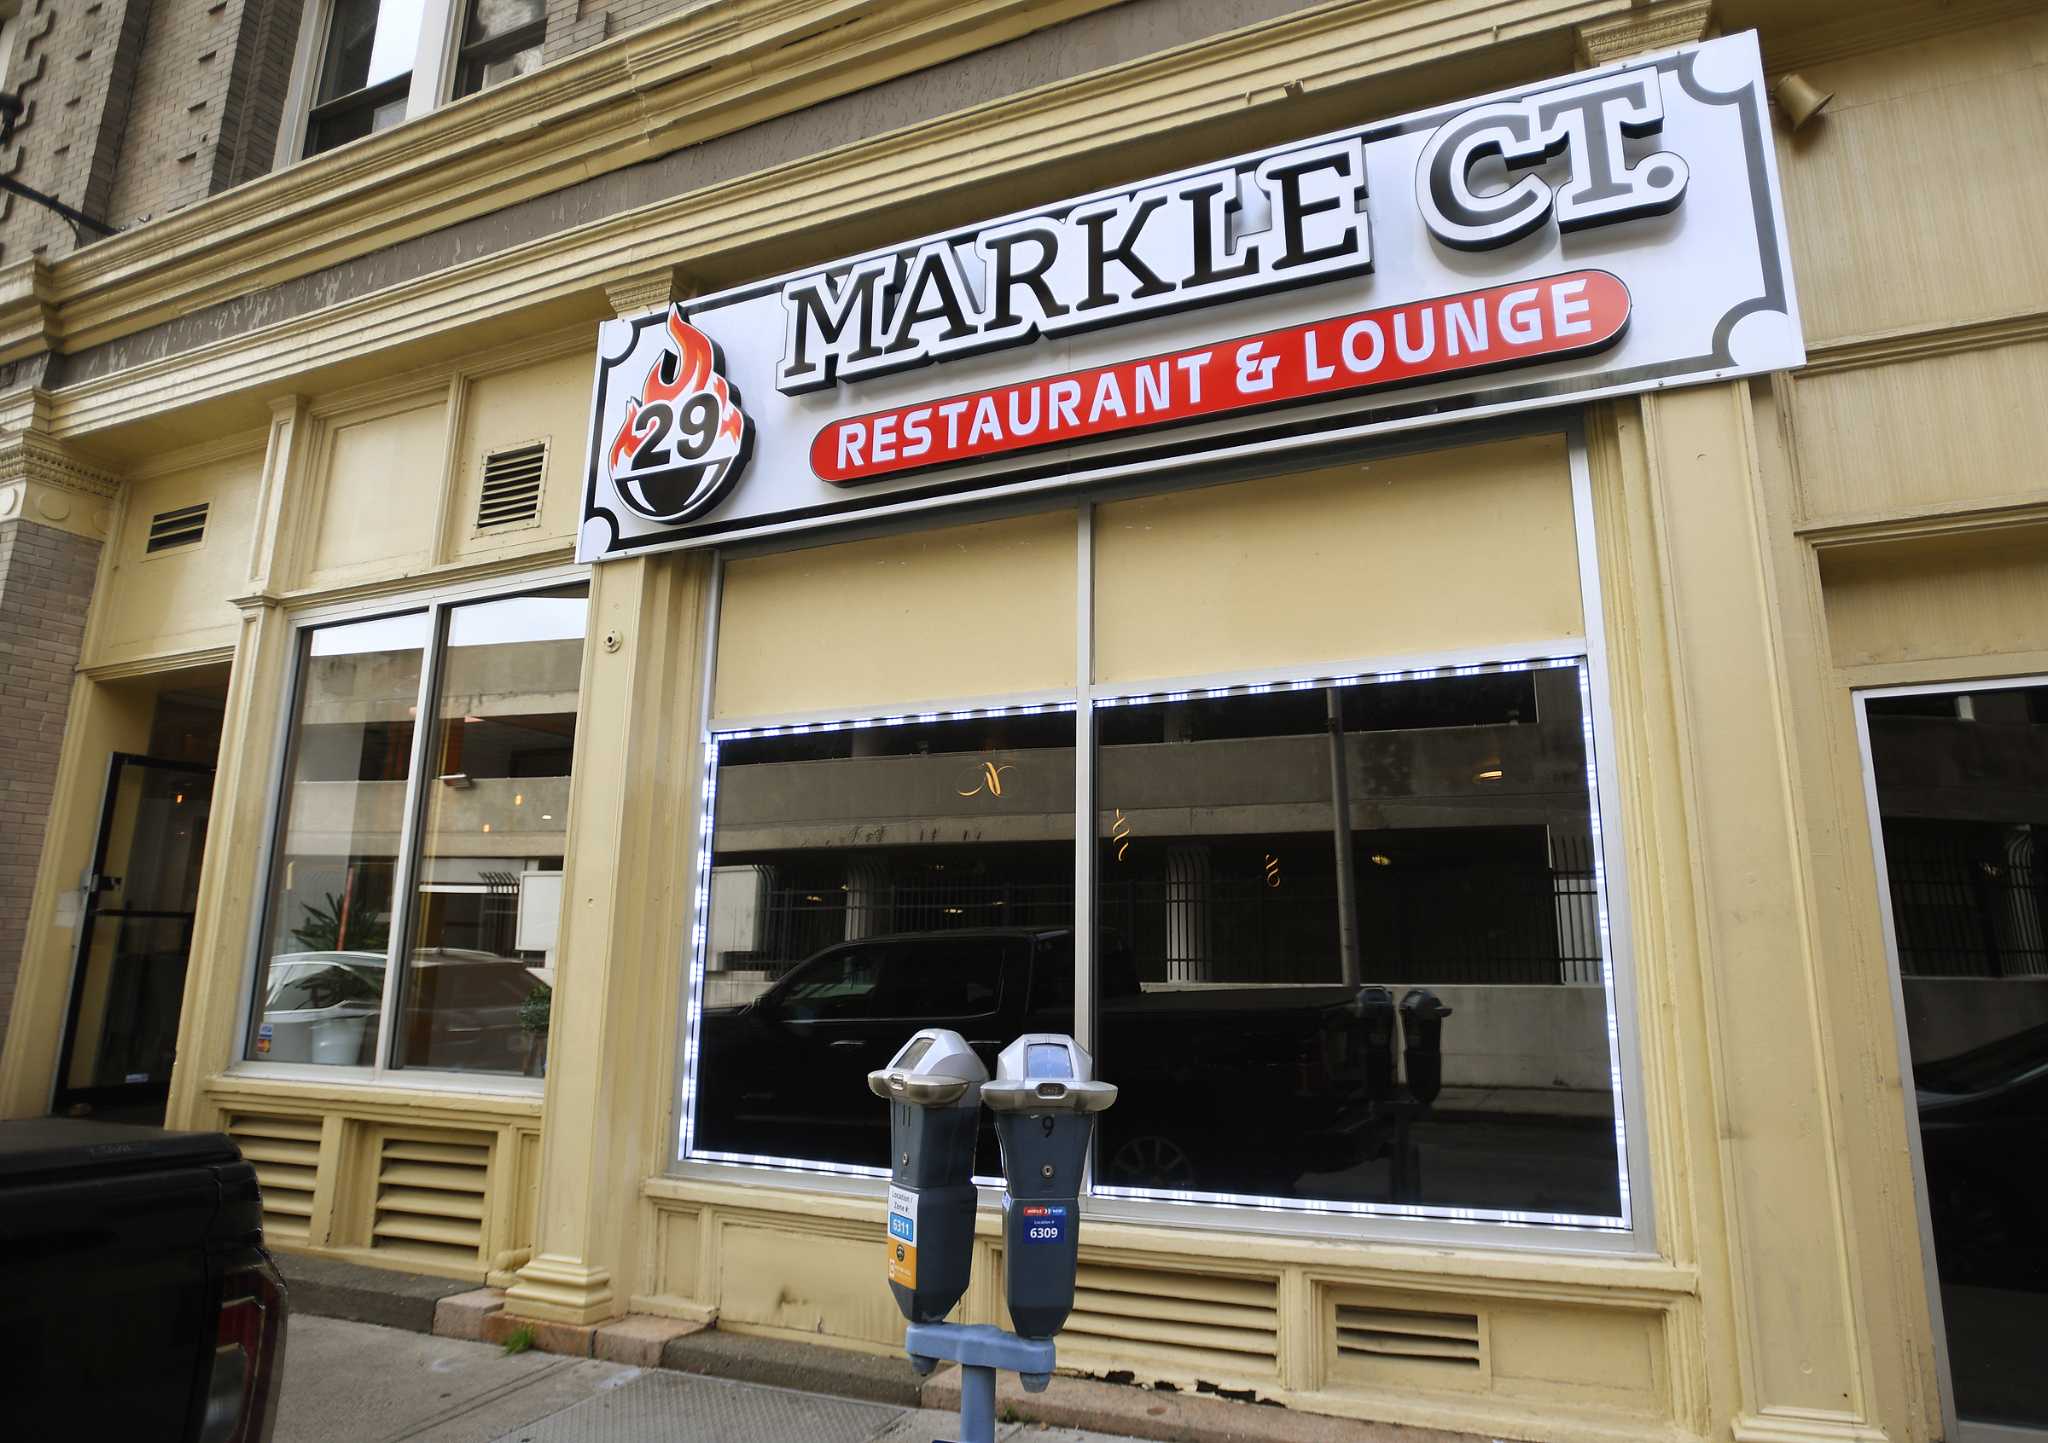 29 Markle Ct restaurant now open in Bridgeport